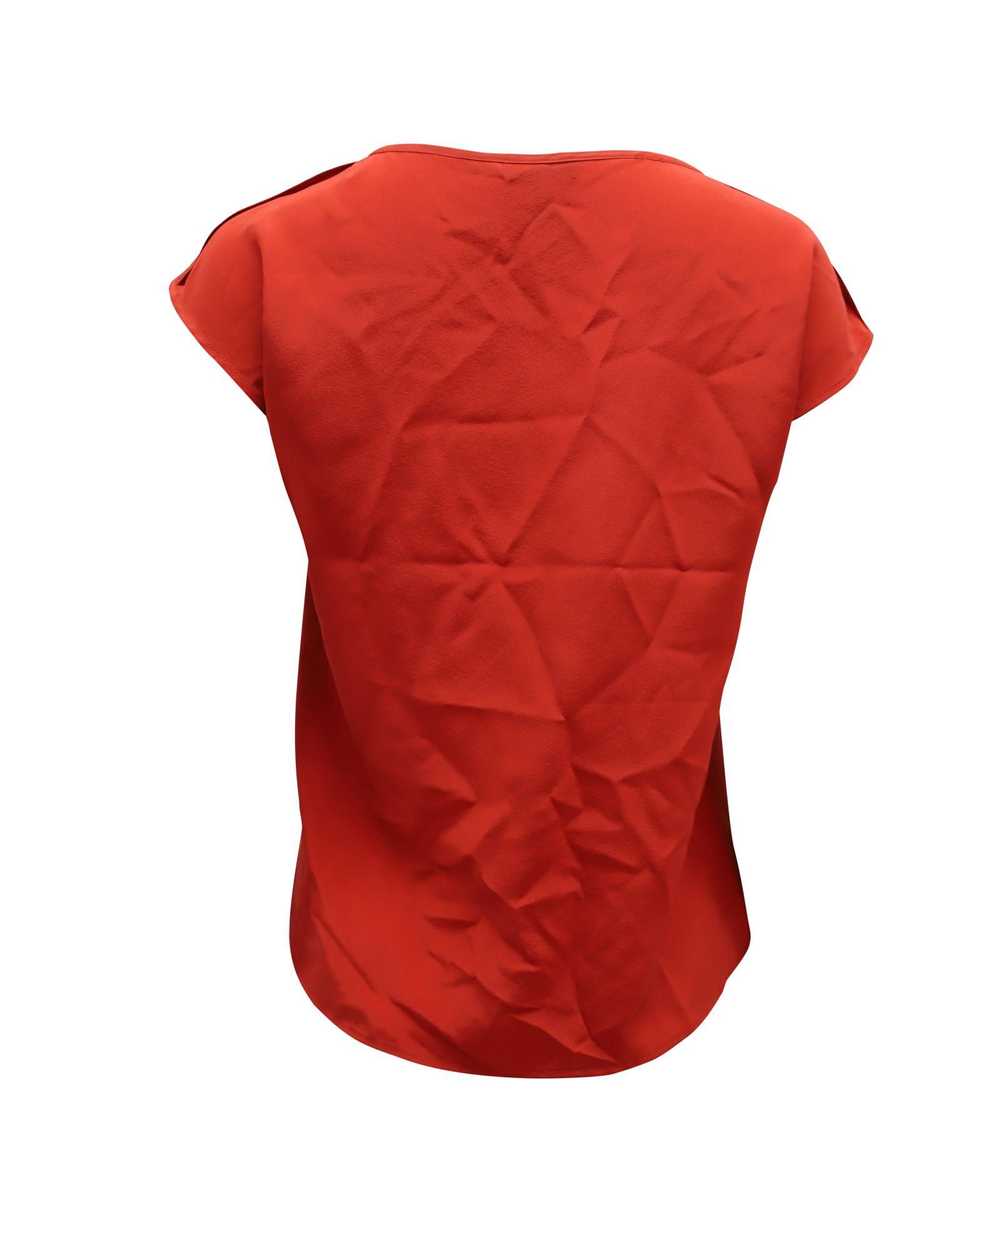 Escada Red Silk Cap-Sleeve Blouse by Escada - image 2